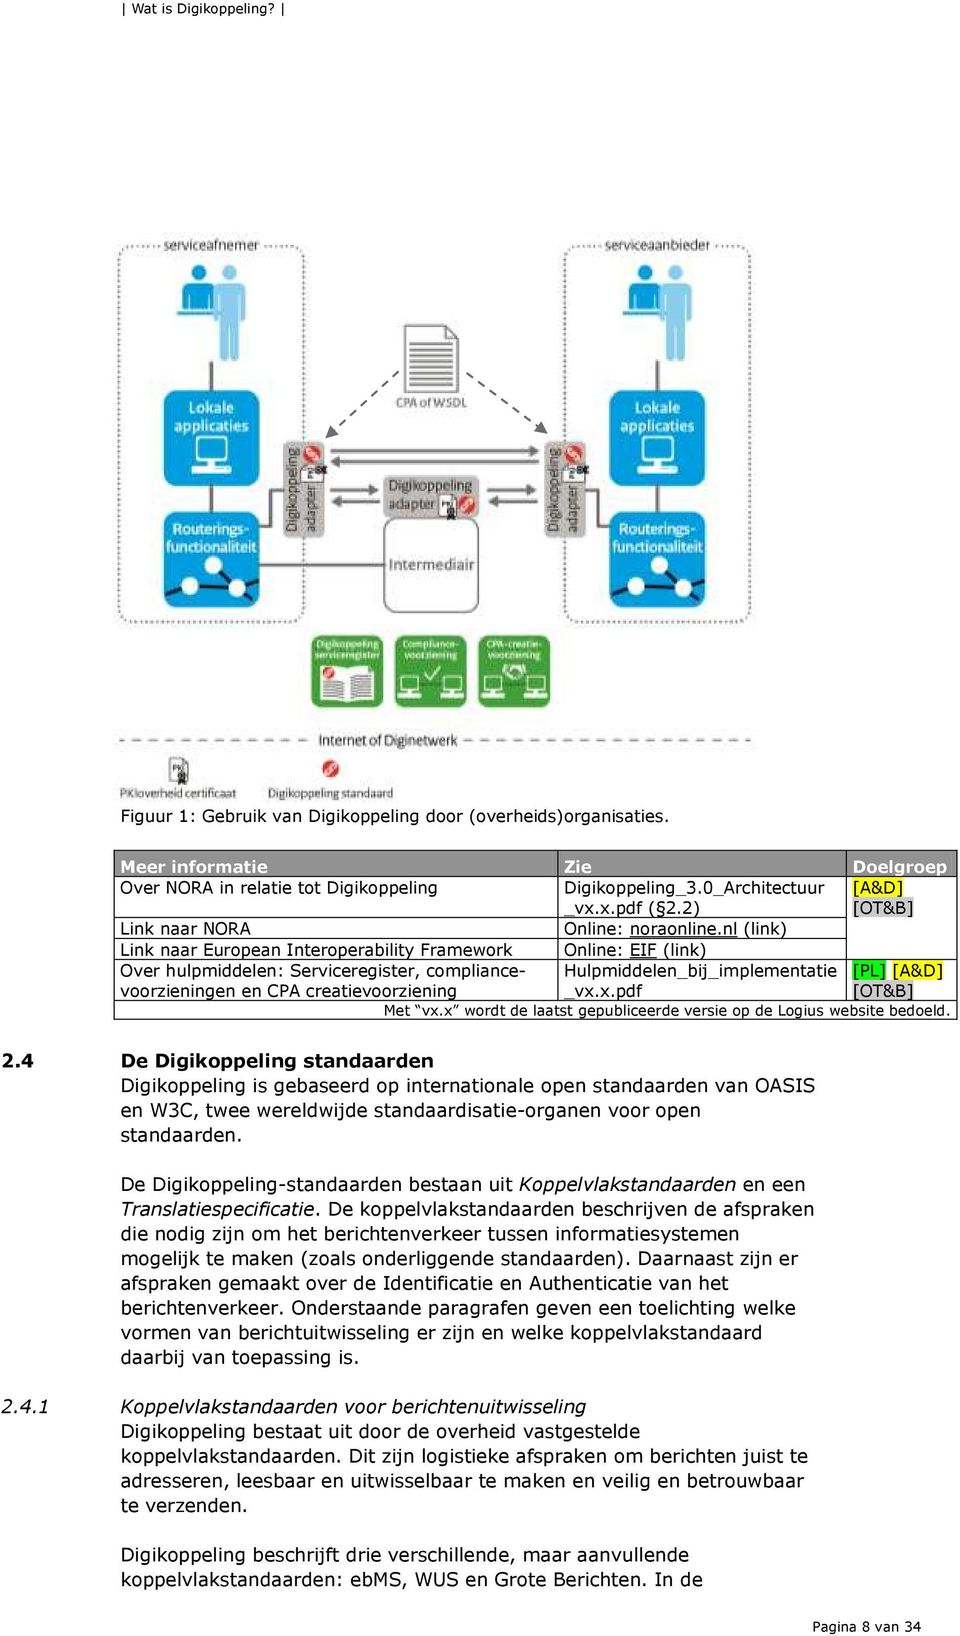 nl (link) Link naar European Interoperability Framework Online: EIF (link) Over hulpmiddelen: Serviceregister, compliancevoorzieningen en CPA creatievoorziening Hulpmiddelen_bij_implementatie _vx.